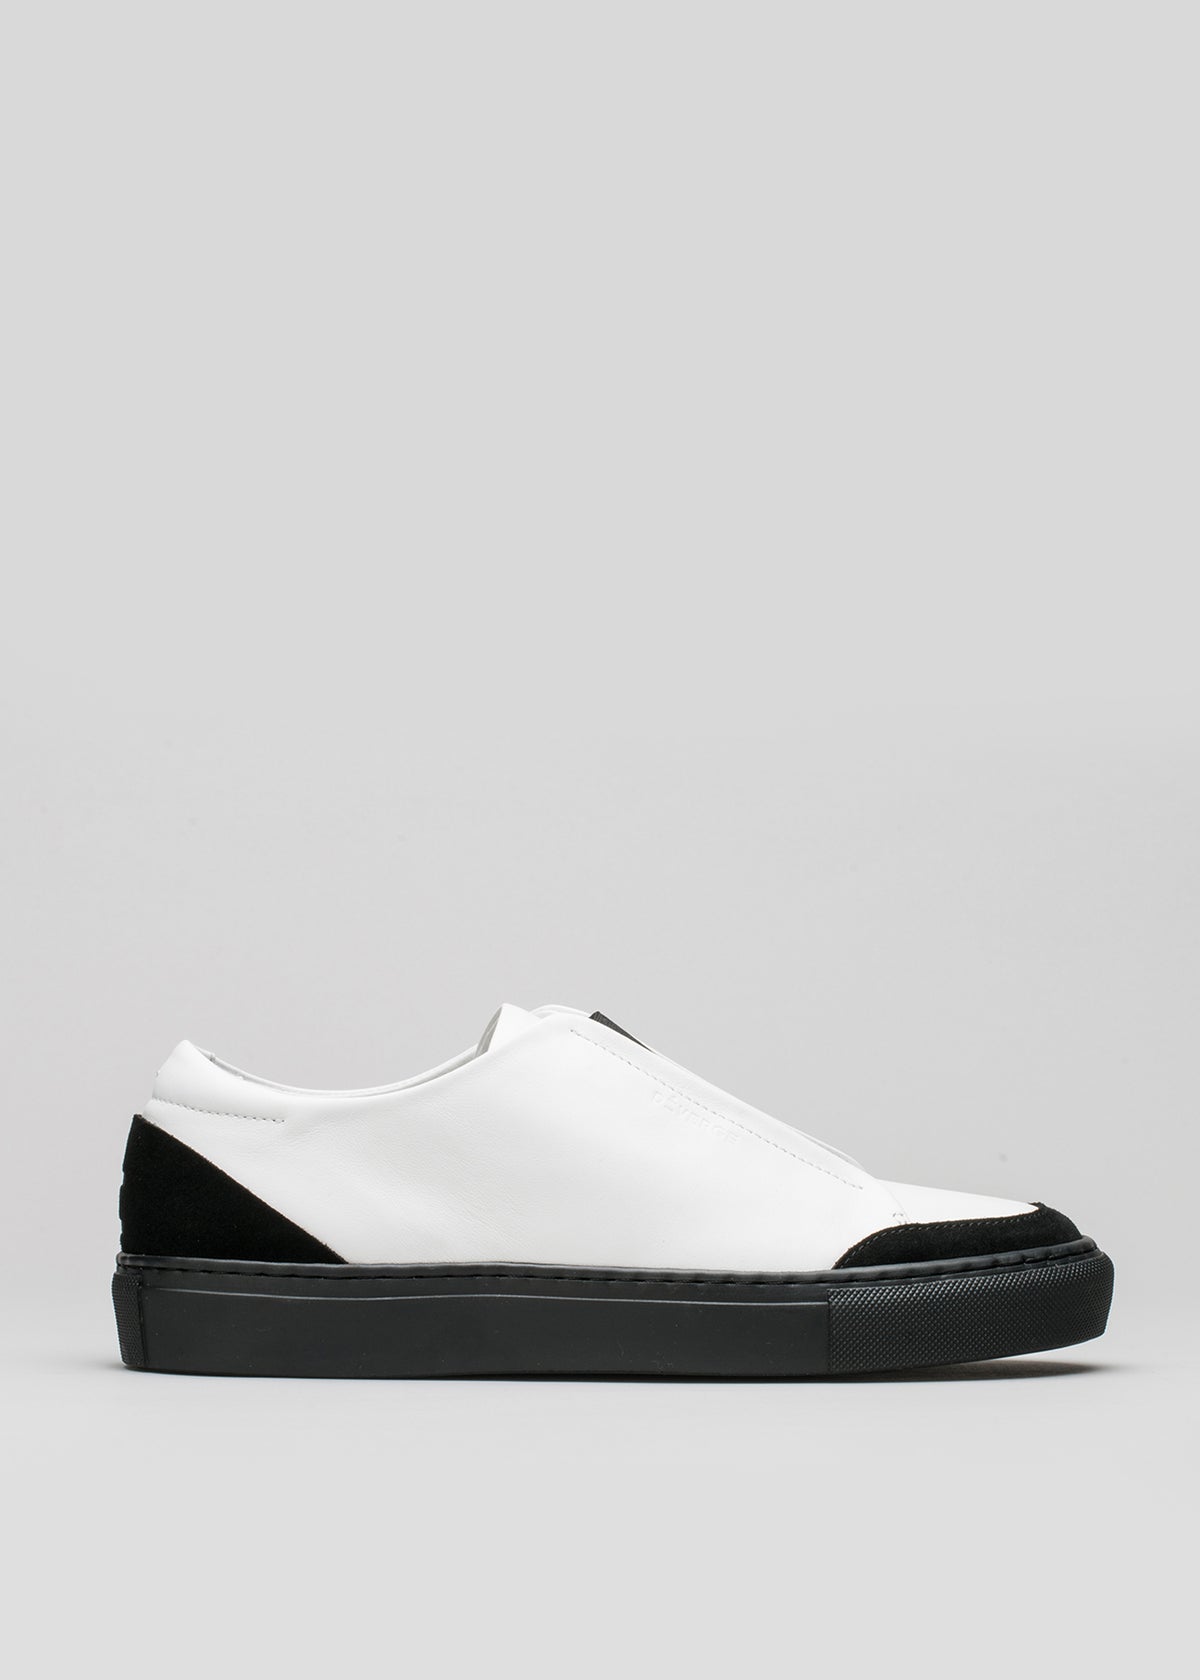 V6 Slip-on-Sneaker aus weißem Leder mit schwarzer Sohle und Zehenkappe auf hellgrauem Hintergrund.